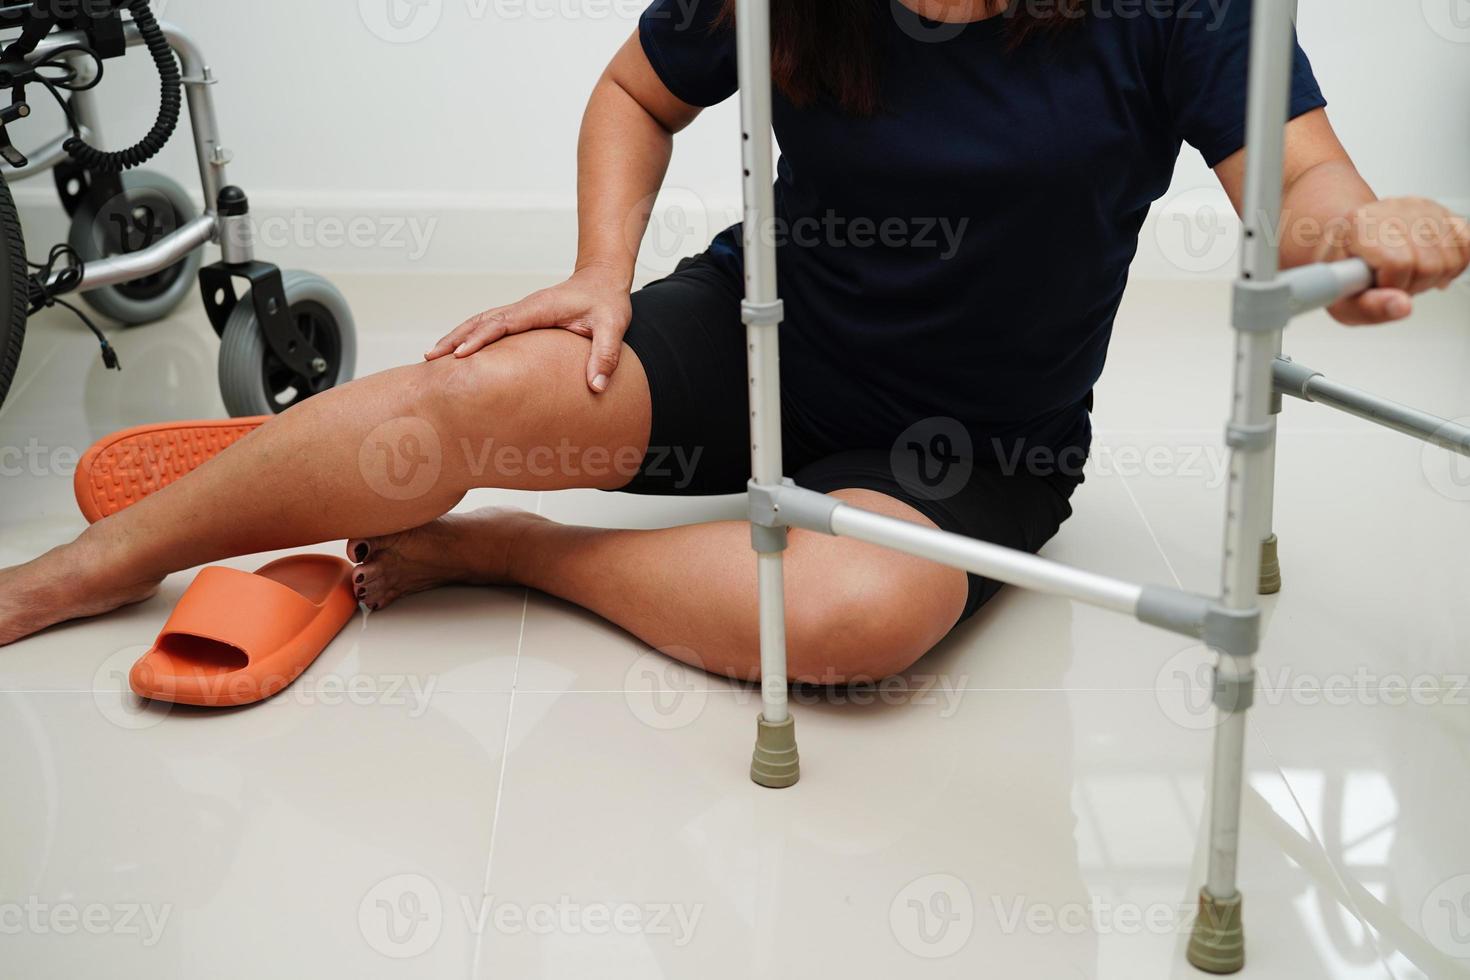 blessure d'une femme asiatique en tombant sur des surfaces glissantes avec une marchette à la maison. photo